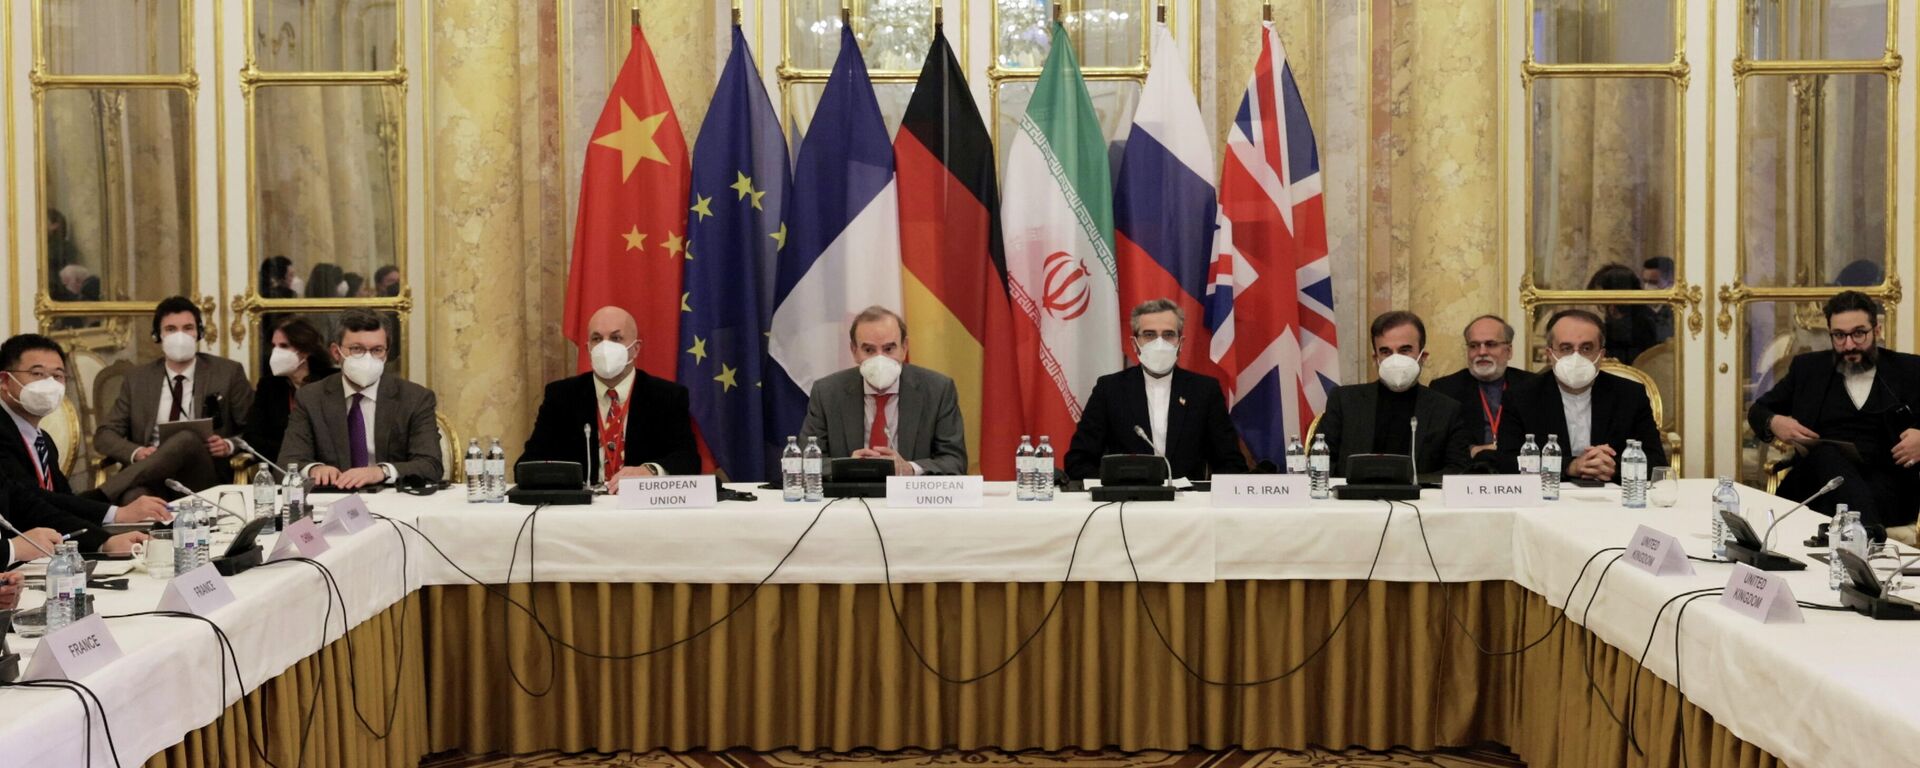 El Secretario General Adjunto del Servicio Europeo de Acción Exterior (SEAE), Enrique Mora, el negociador nuclear jefe de Irán, Ali Bagheri Kani, y delegaciones, en espera del inicio de una reunión de la Comisión Conjunta del JCPOA en Viena, Austria, el 17 de diciembre de 2021 - Sputnik Mundo, 1920, 18.12.2021